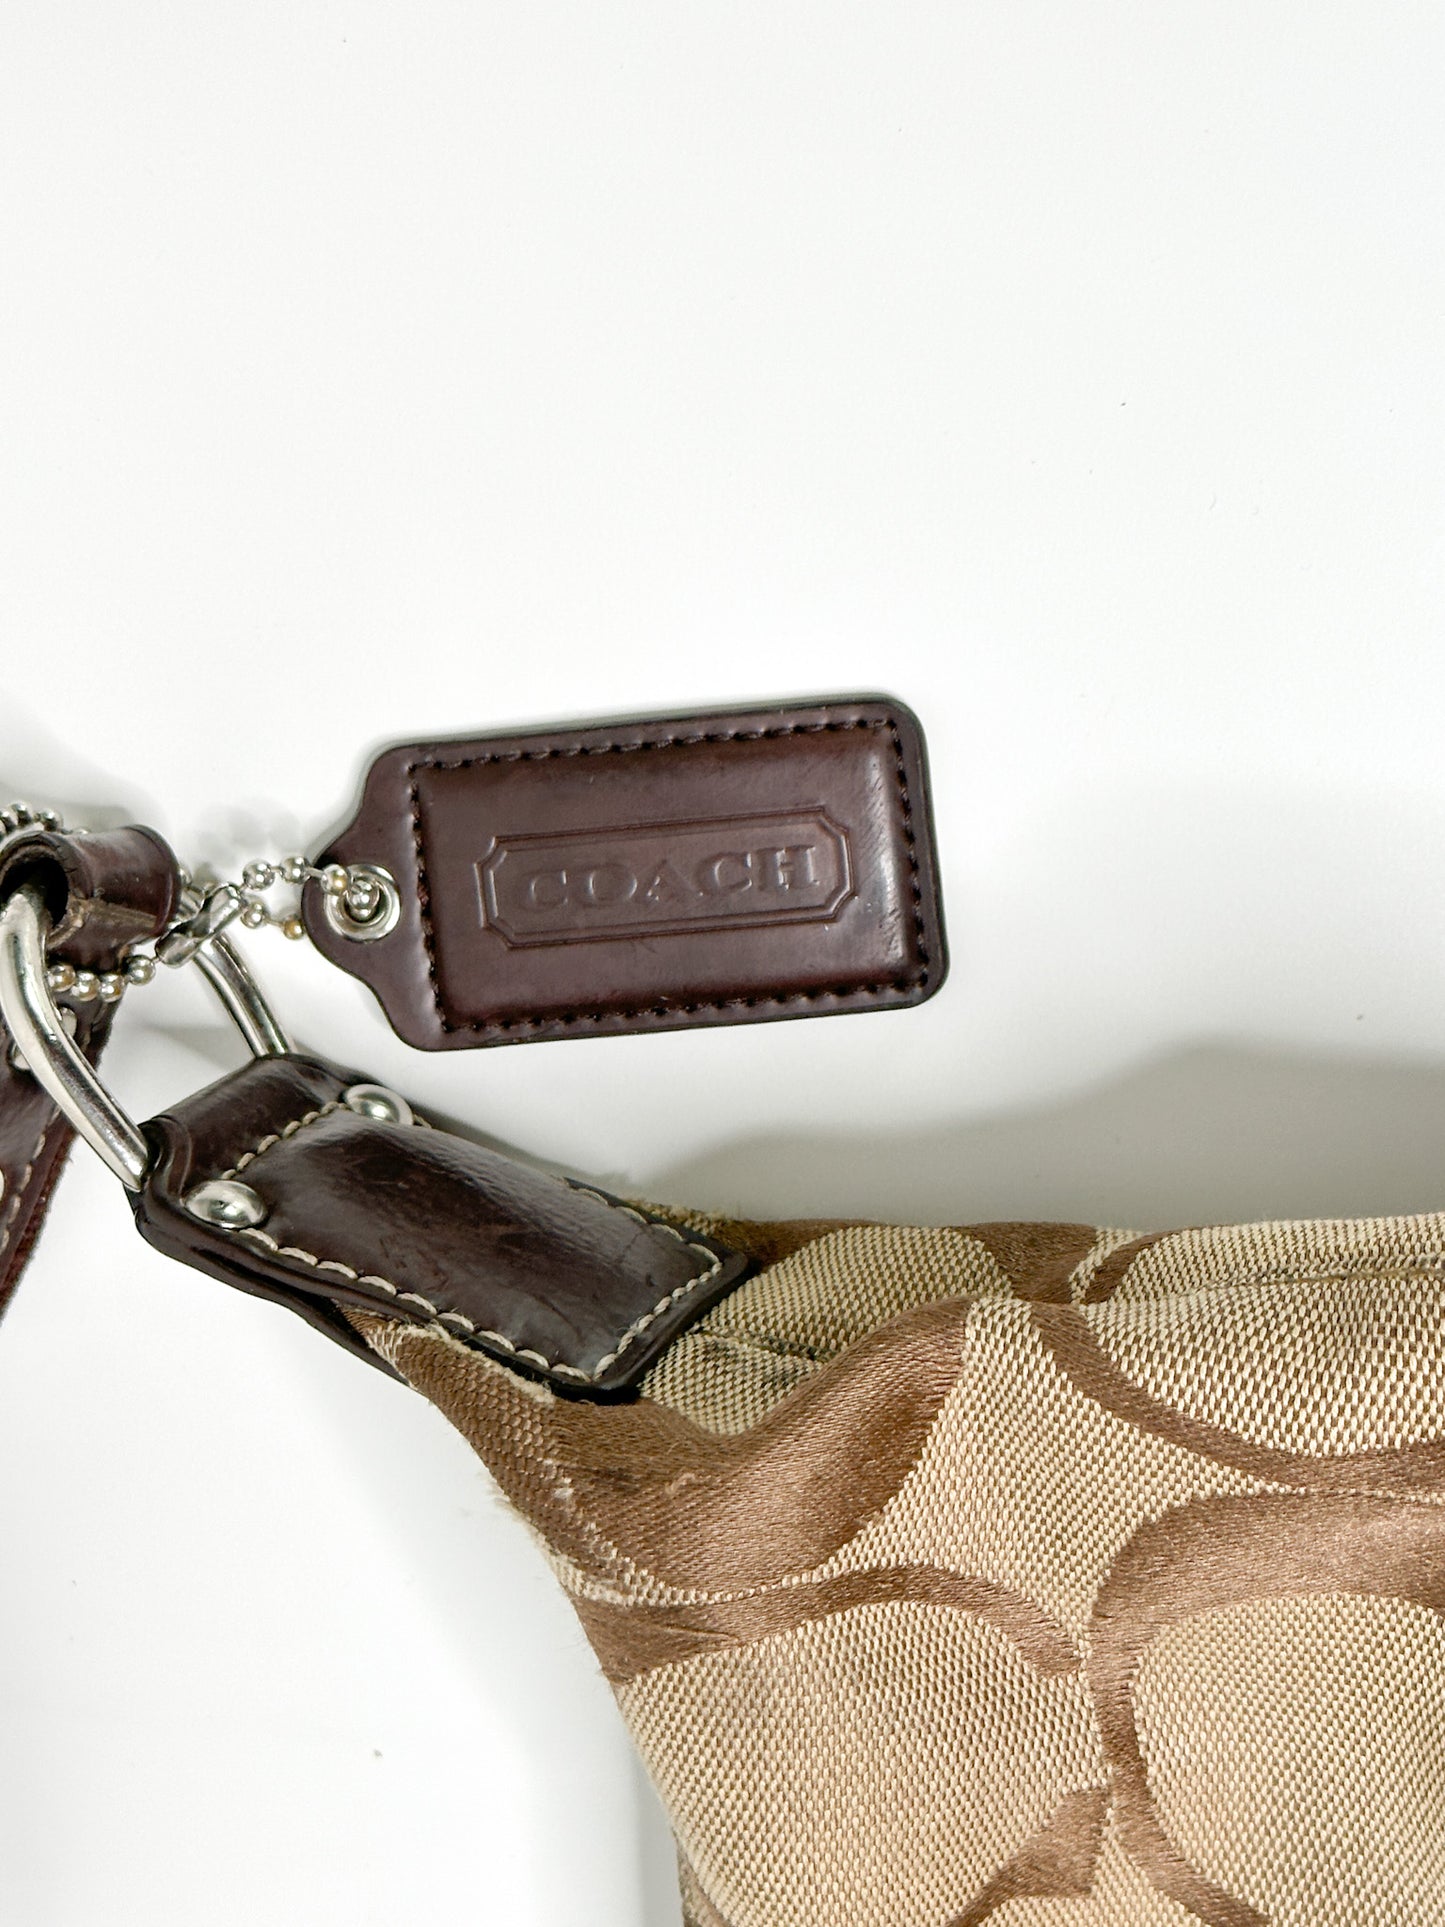 Vintage Monogram COACH Khaki Jacquard Hobo Bag | Authentic Luxury Purse | Authentic Coach Bag